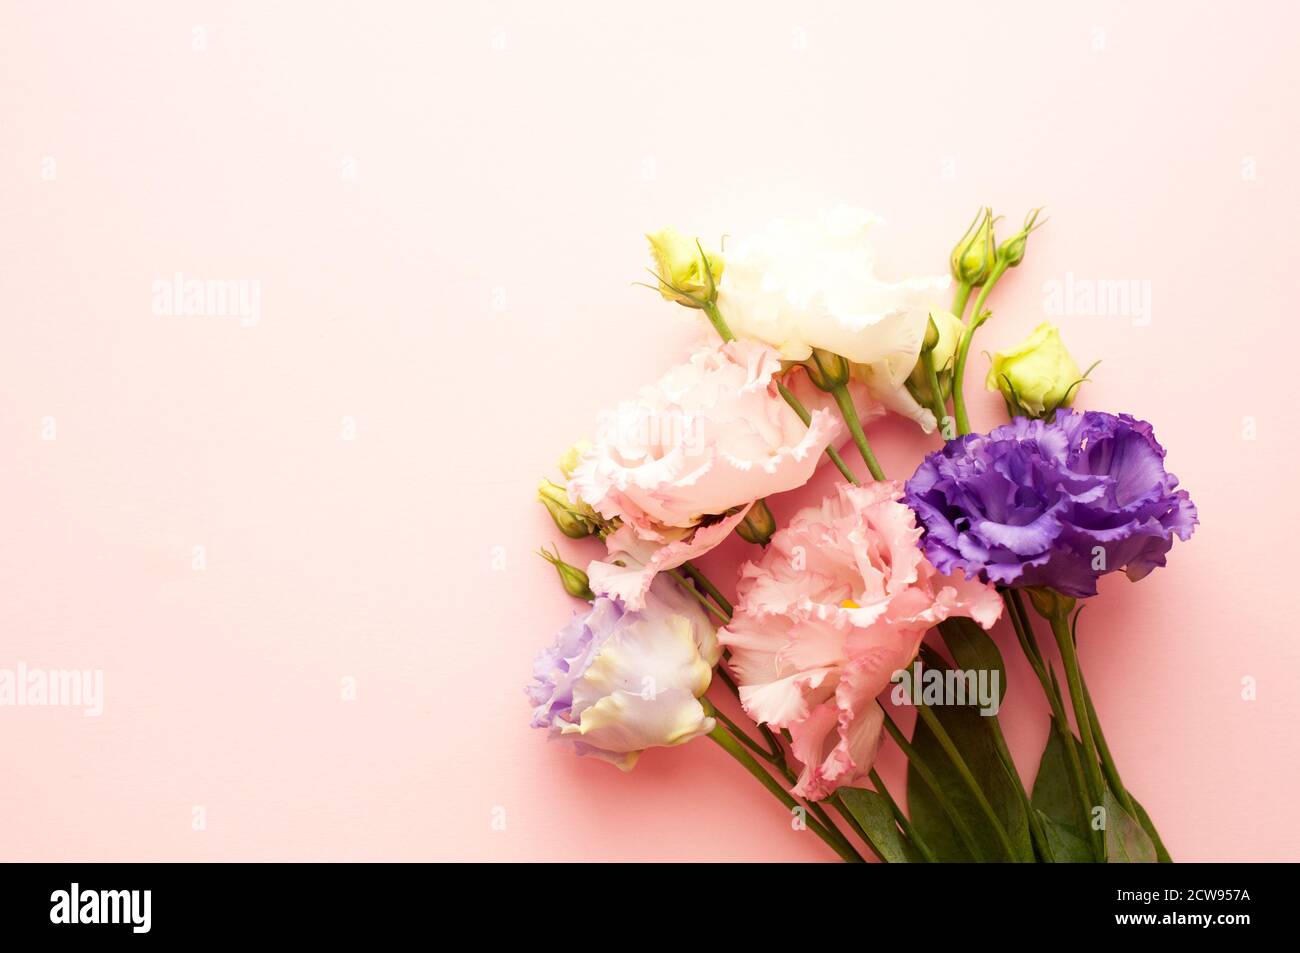 Schöne rosa und weiße eustoma Blüten (lisianthus) in voller Blüte mit grünen Blättern. Blumenstrauß auf rosa Hintergrund. Stockfoto